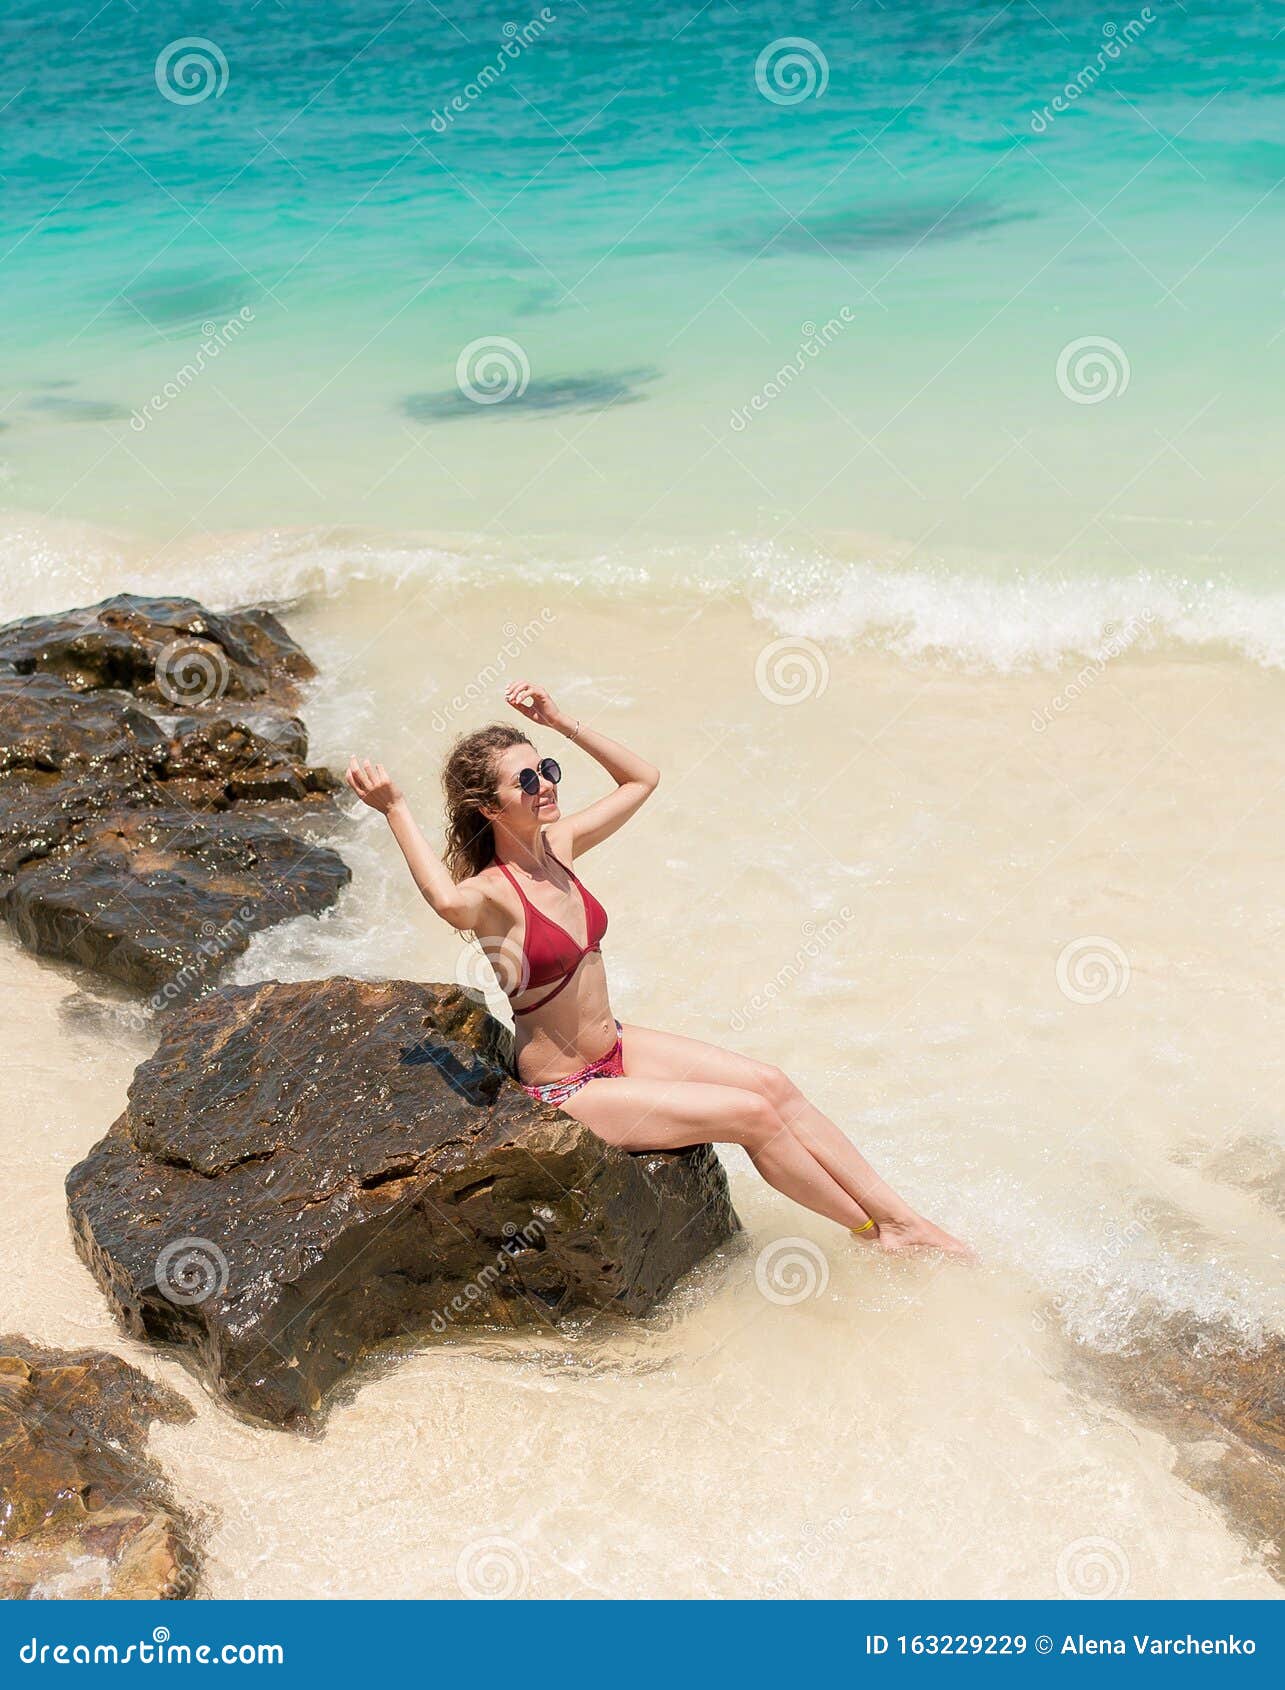 Mujer En Bikini En Playa Tropical Las Mujeres Disfrutan De La Playa Imagen  de archivo - Imagen de felicidad, vacaciones: 163229229